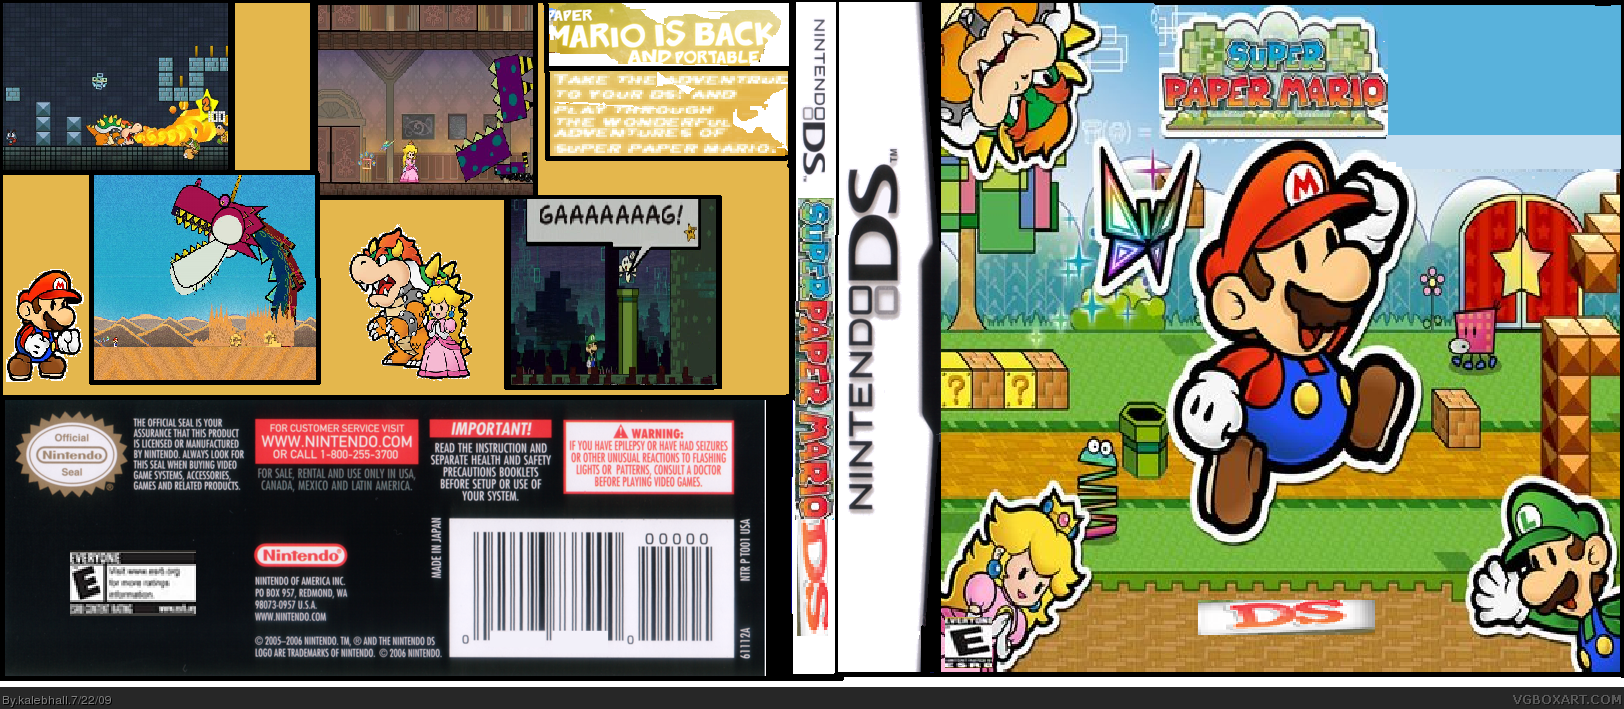 Super Paper Mario DS box cover